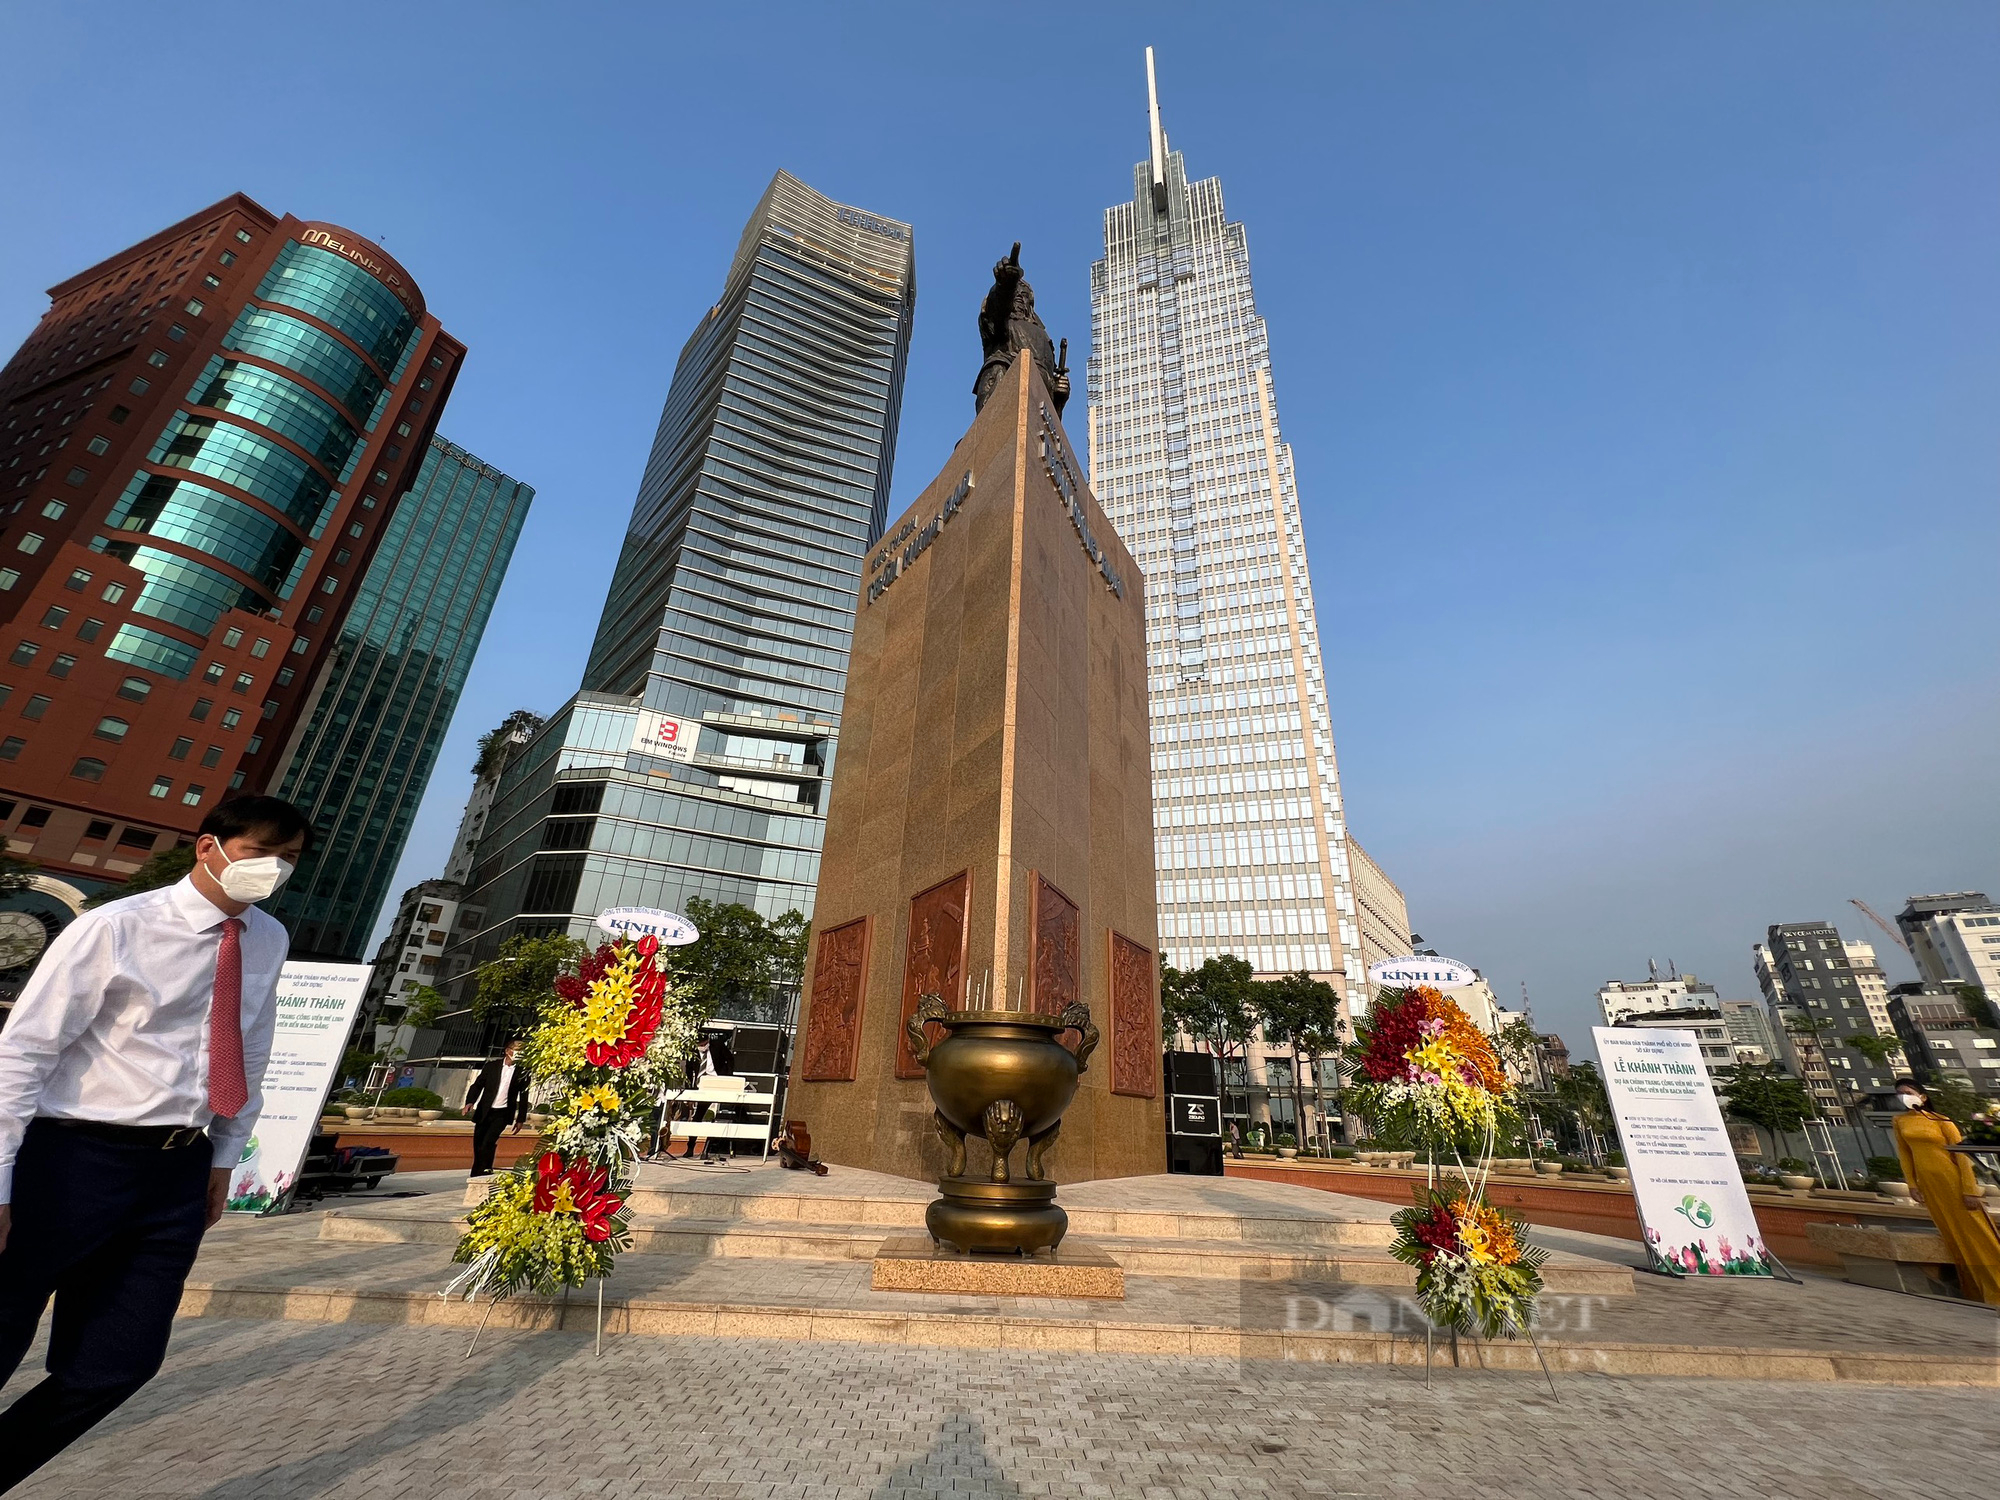 Khánh thành công viên Mê Linh bến Bạch Đằng: Tạo không gian văn hóa Sài Gòn 300 năm trên bến du thuyền - Ảnh 2.